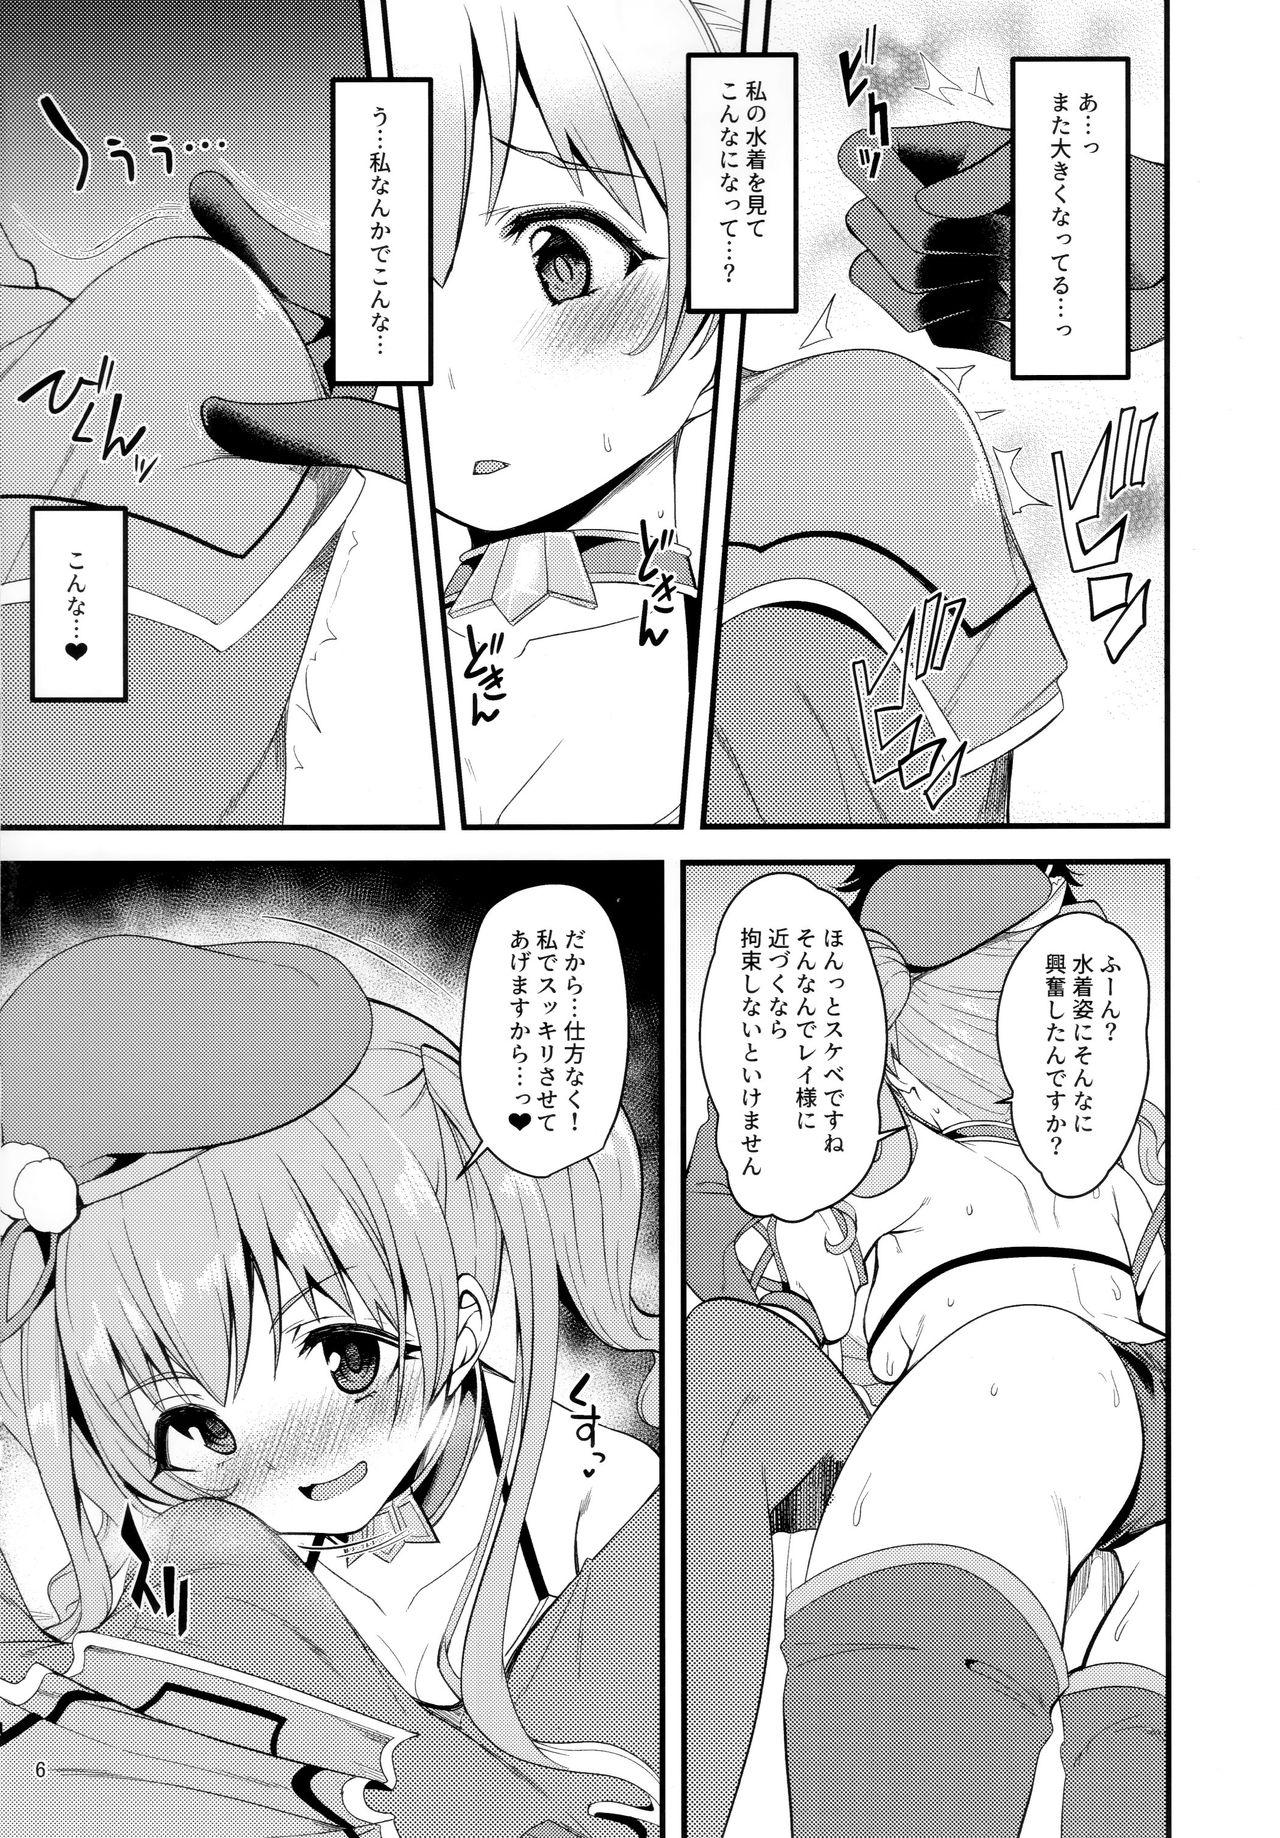 Real Orgasm Tsumugi Make Heroine Move!! 02 - Princess connect Hardcore Sex - Page 5